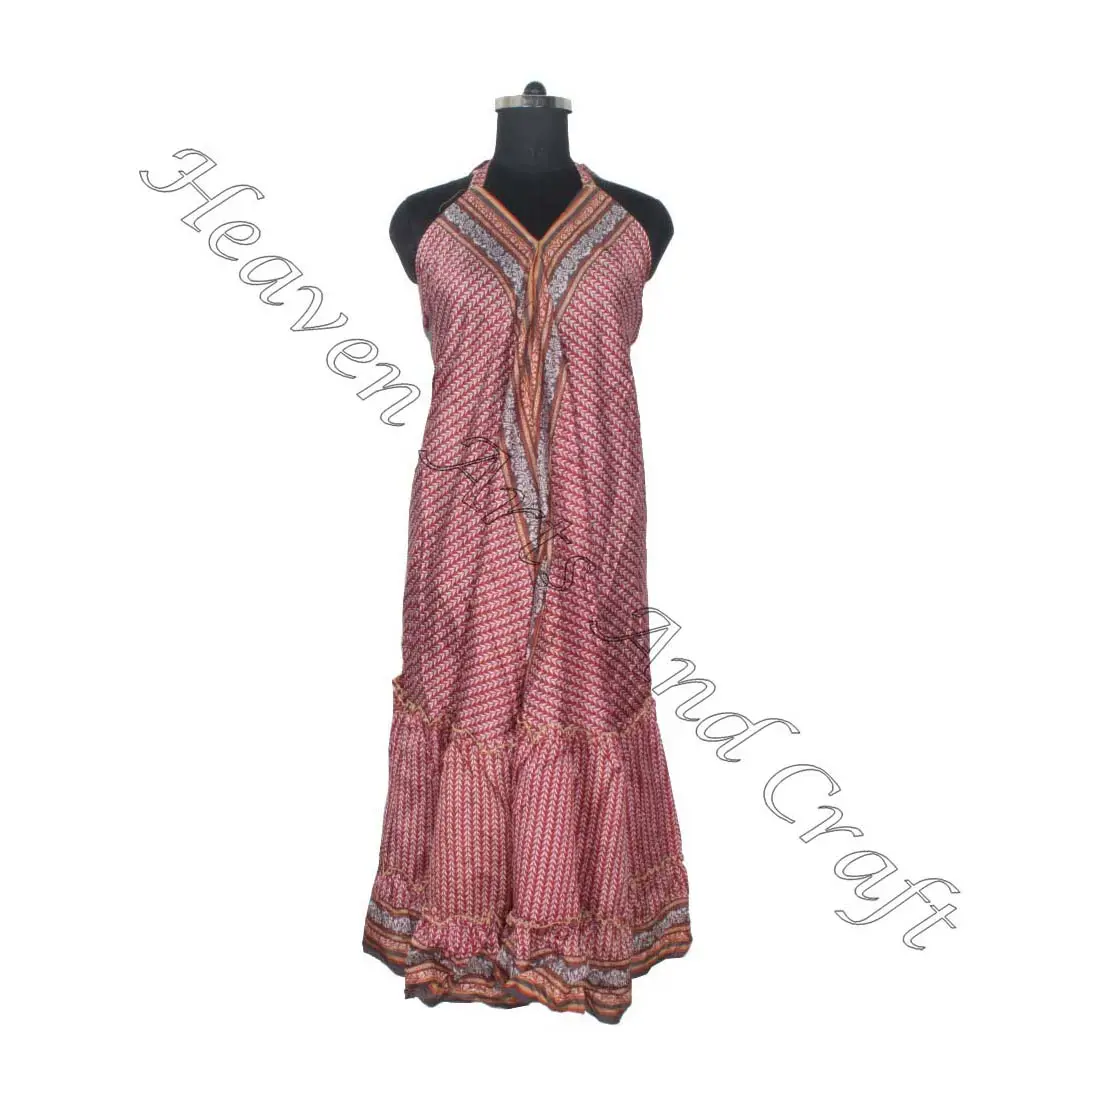 SD019 साड़ी / साड़ी / शैरी भारतीय और पाकिस्तानी कपड़े भारत से हिप्पी बोहो निर्माता और निर्यातक महिलाओं के परिधान विंटेज साड़ी